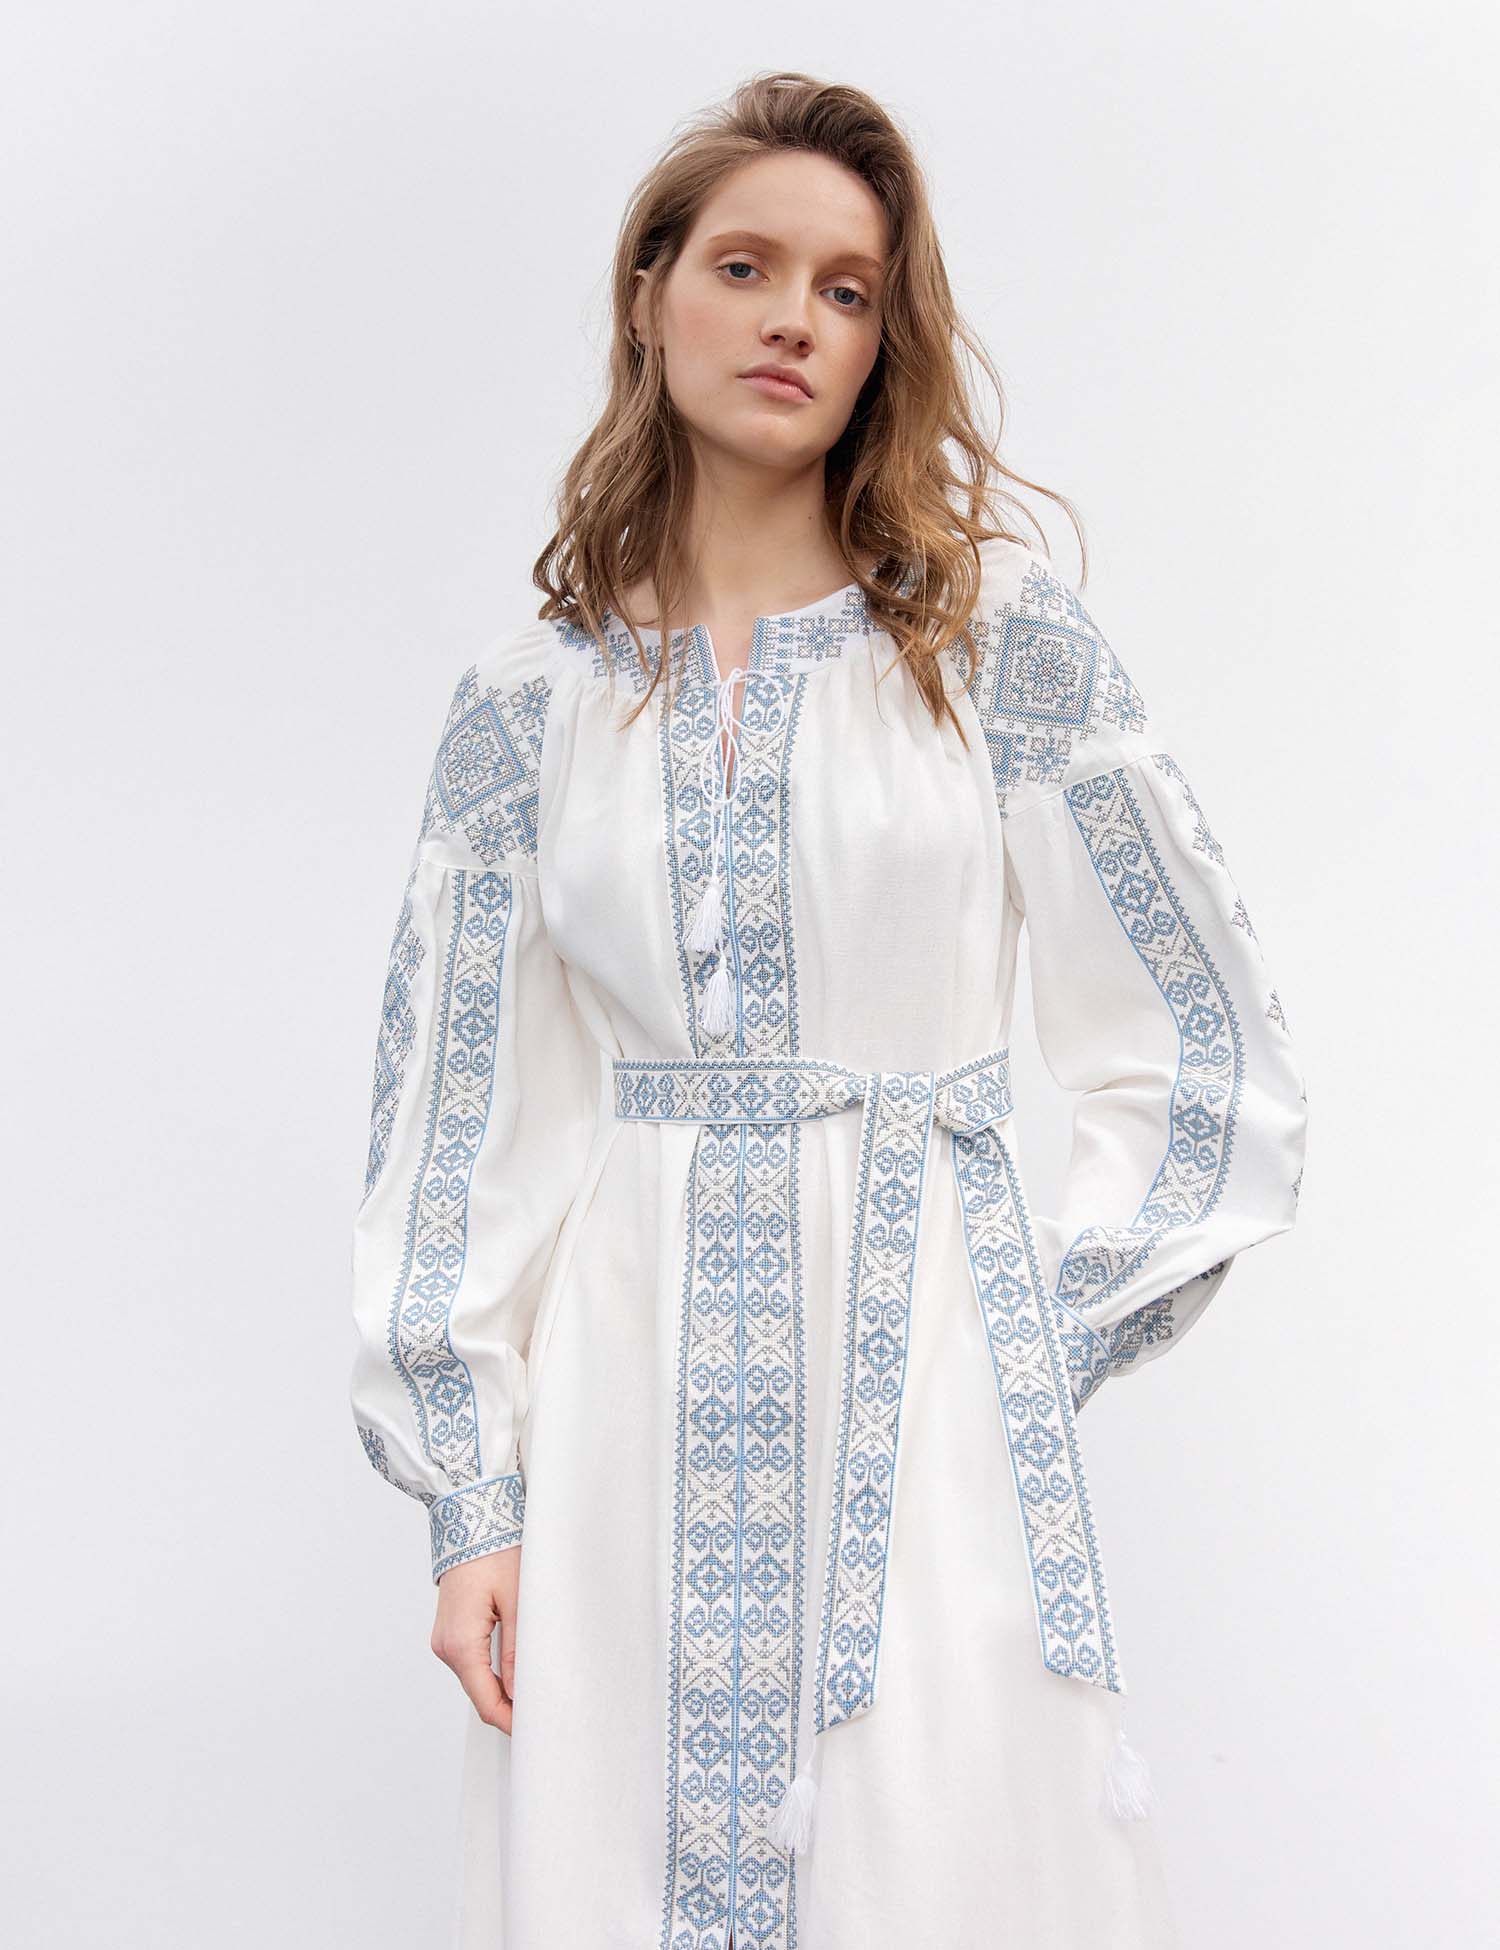 Картинка Вишита сукня біла з блакитним орнаментом